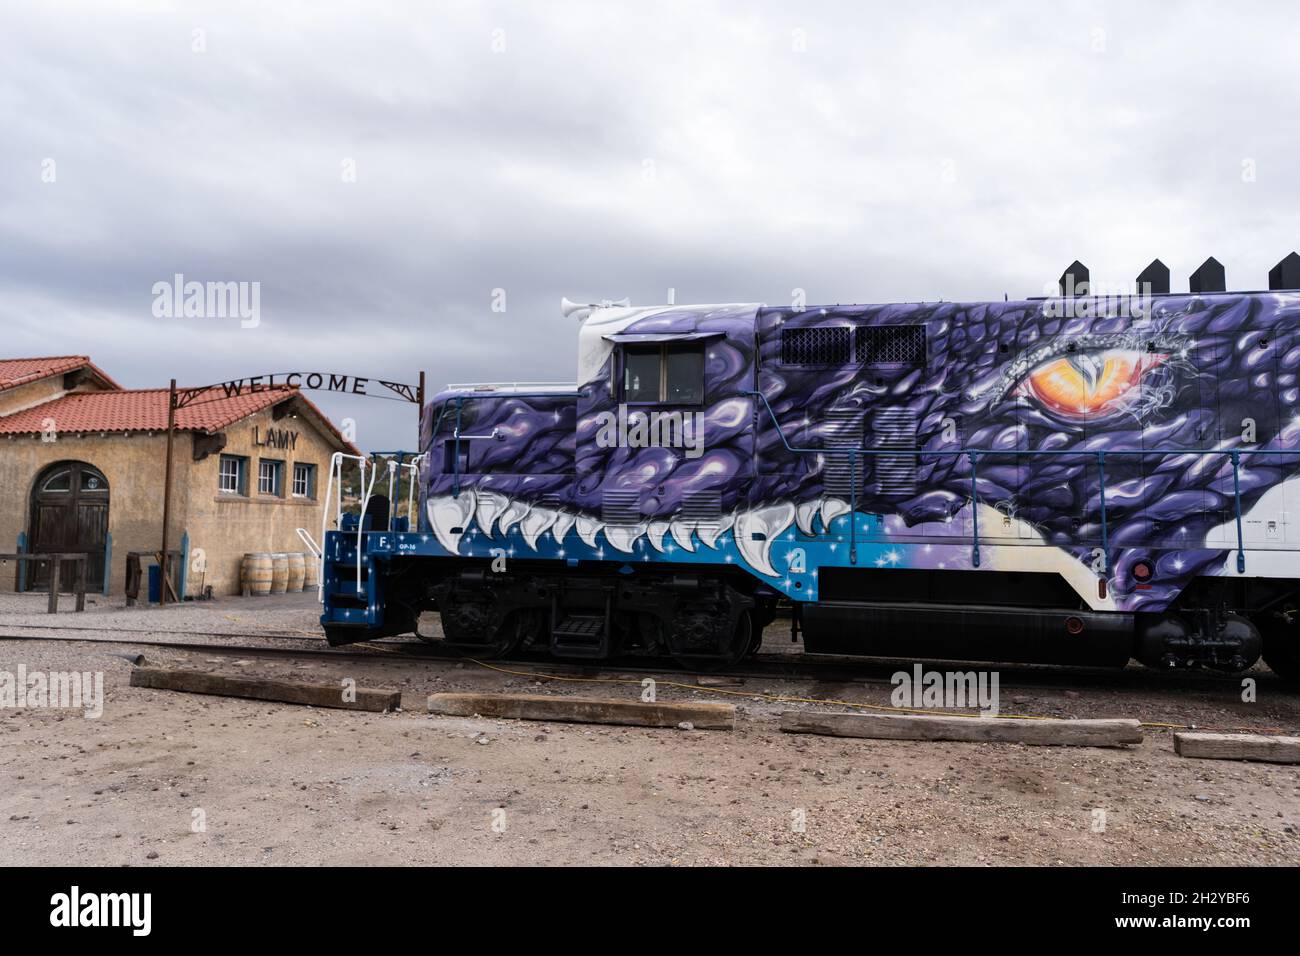 Una locomotora pintada de arriba a abajo con el arte de dragón “Juego de Tronos” se encuentra en la estación Amtrak de Lamy en Lamy, Nuevo México, justo al sur de Santa Fe. El Foto de stock